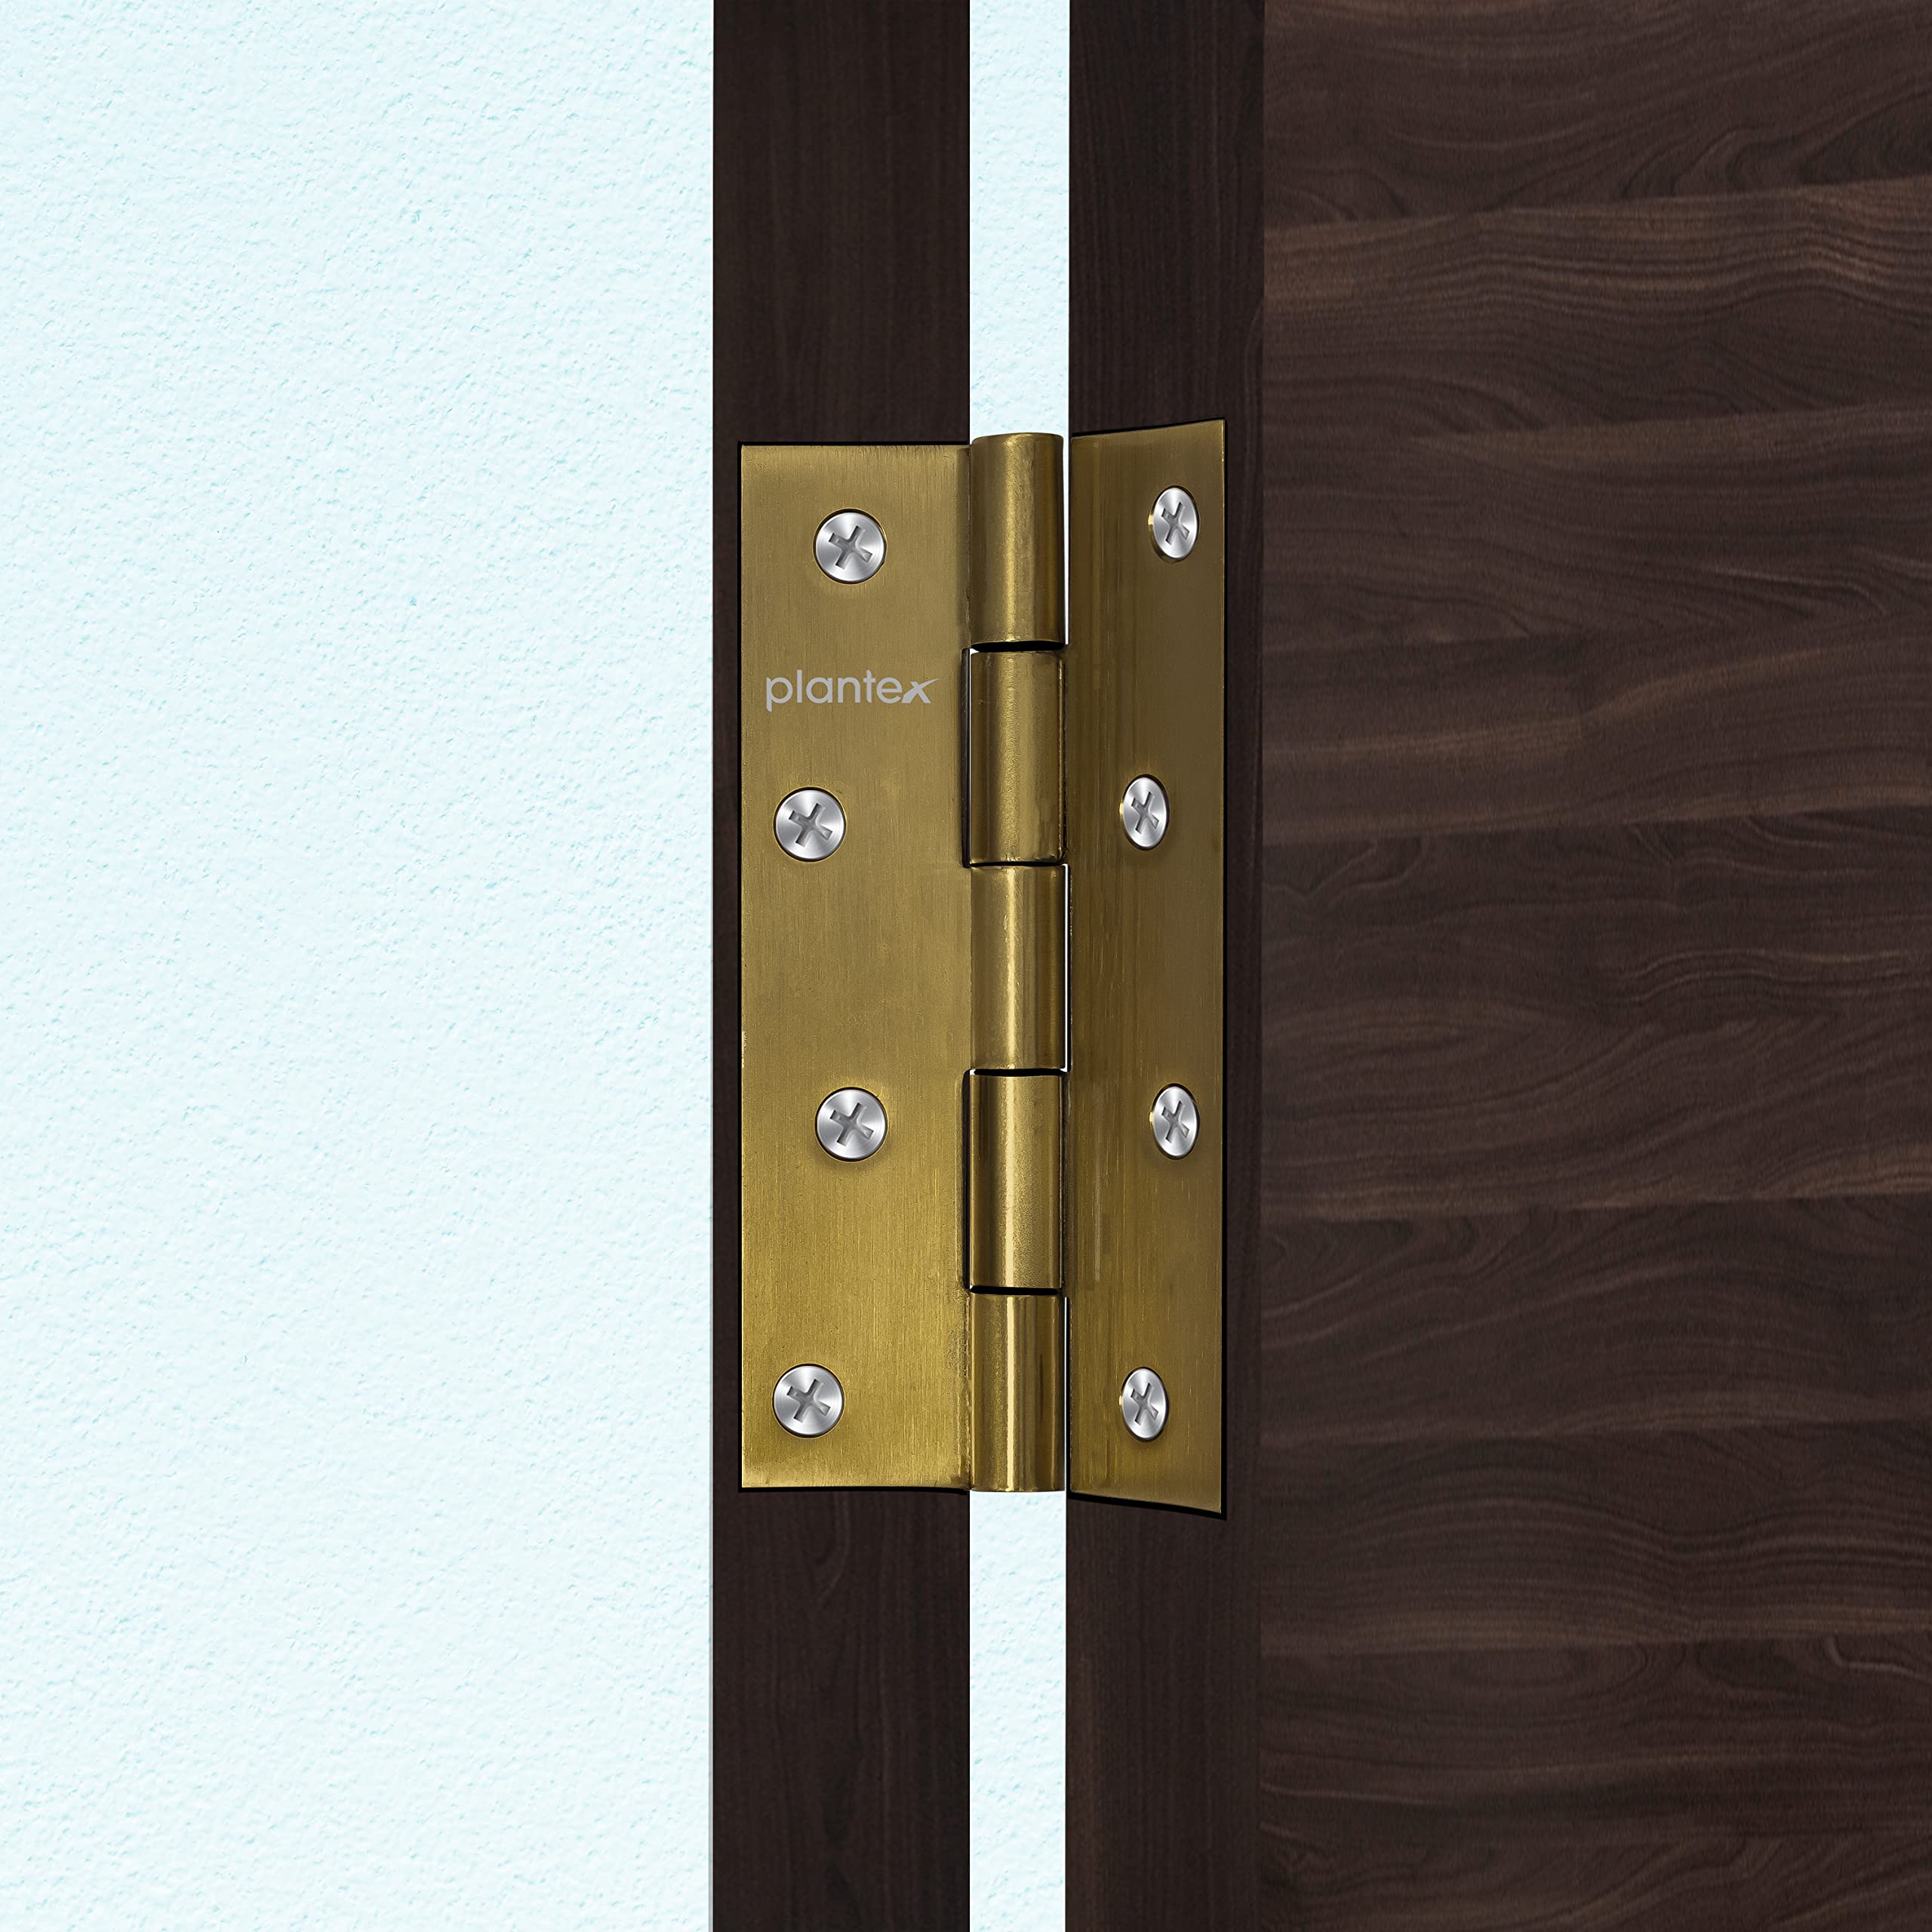 Plantex Heavy Duty Stainless Steel Door Butt Hinges 5 inch x 12 Gauge/2.5 mm Thickness Home/Office/Hotel for Main Door/Bedroom/Kitchen/Bathroom - Pack of 12 (Brass Antique)